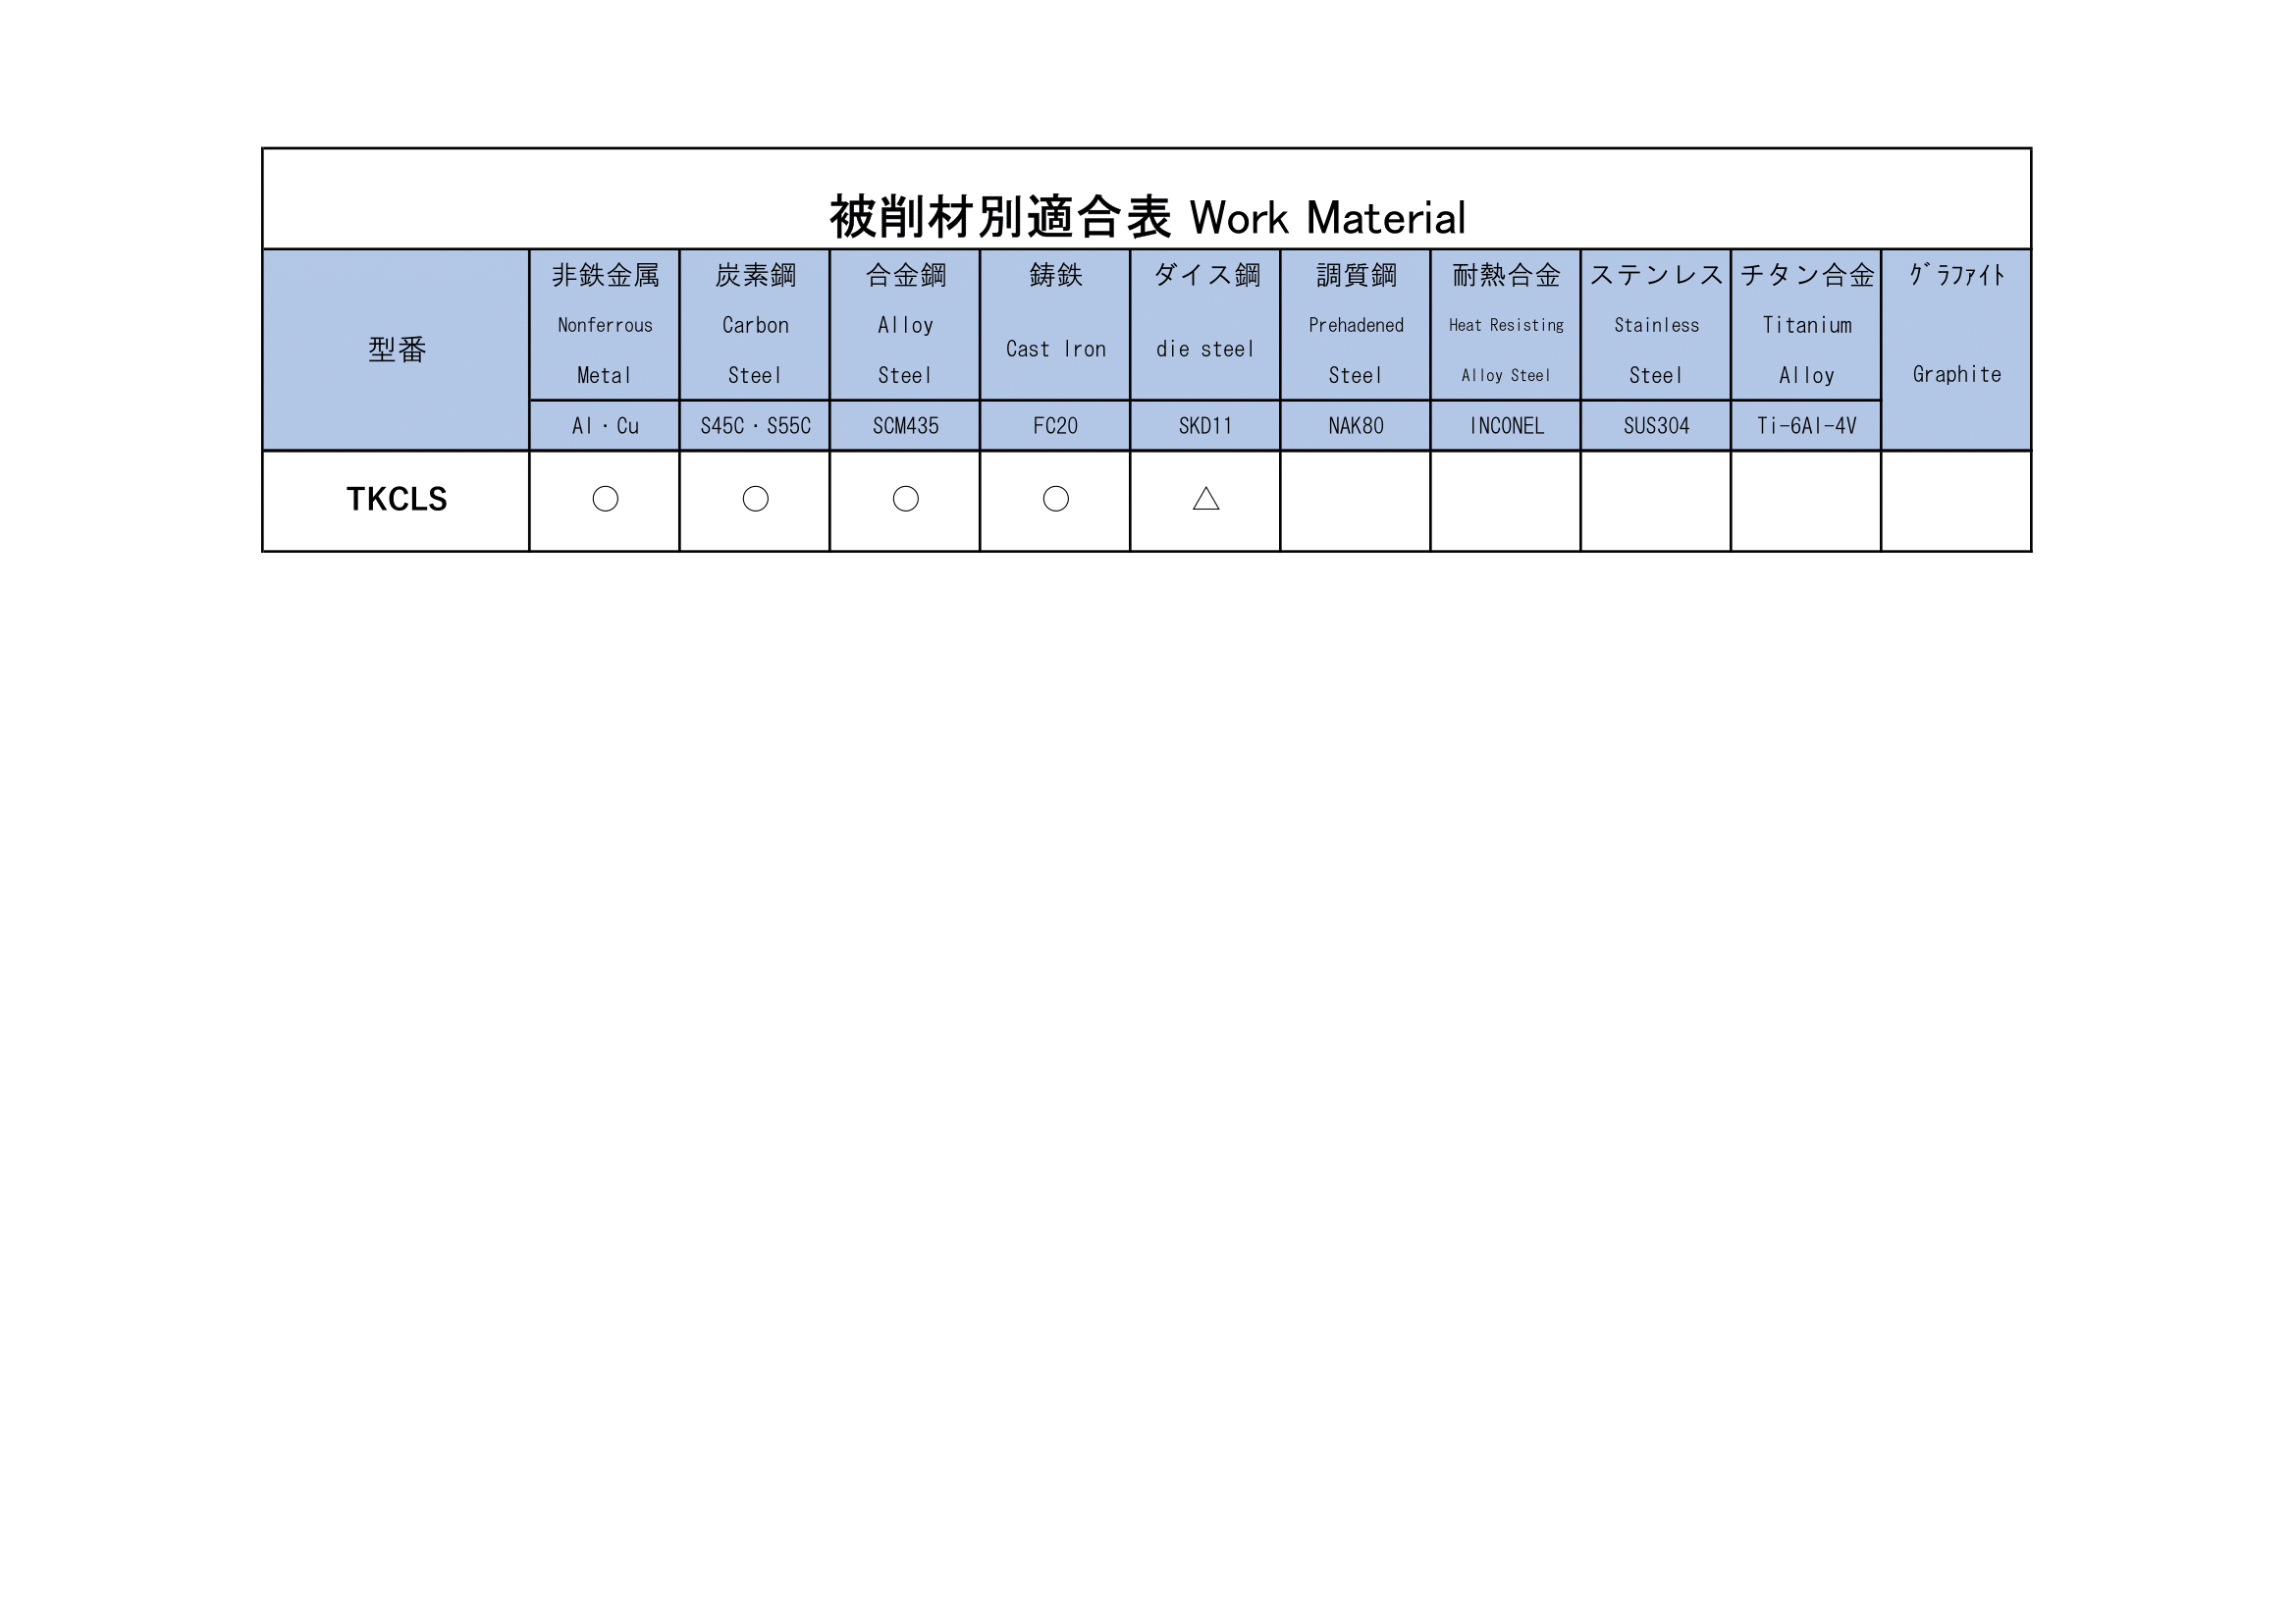 TKCLS(ロングシャンク千鳥刃キーシードカッター) | 株式会社 栄工舎